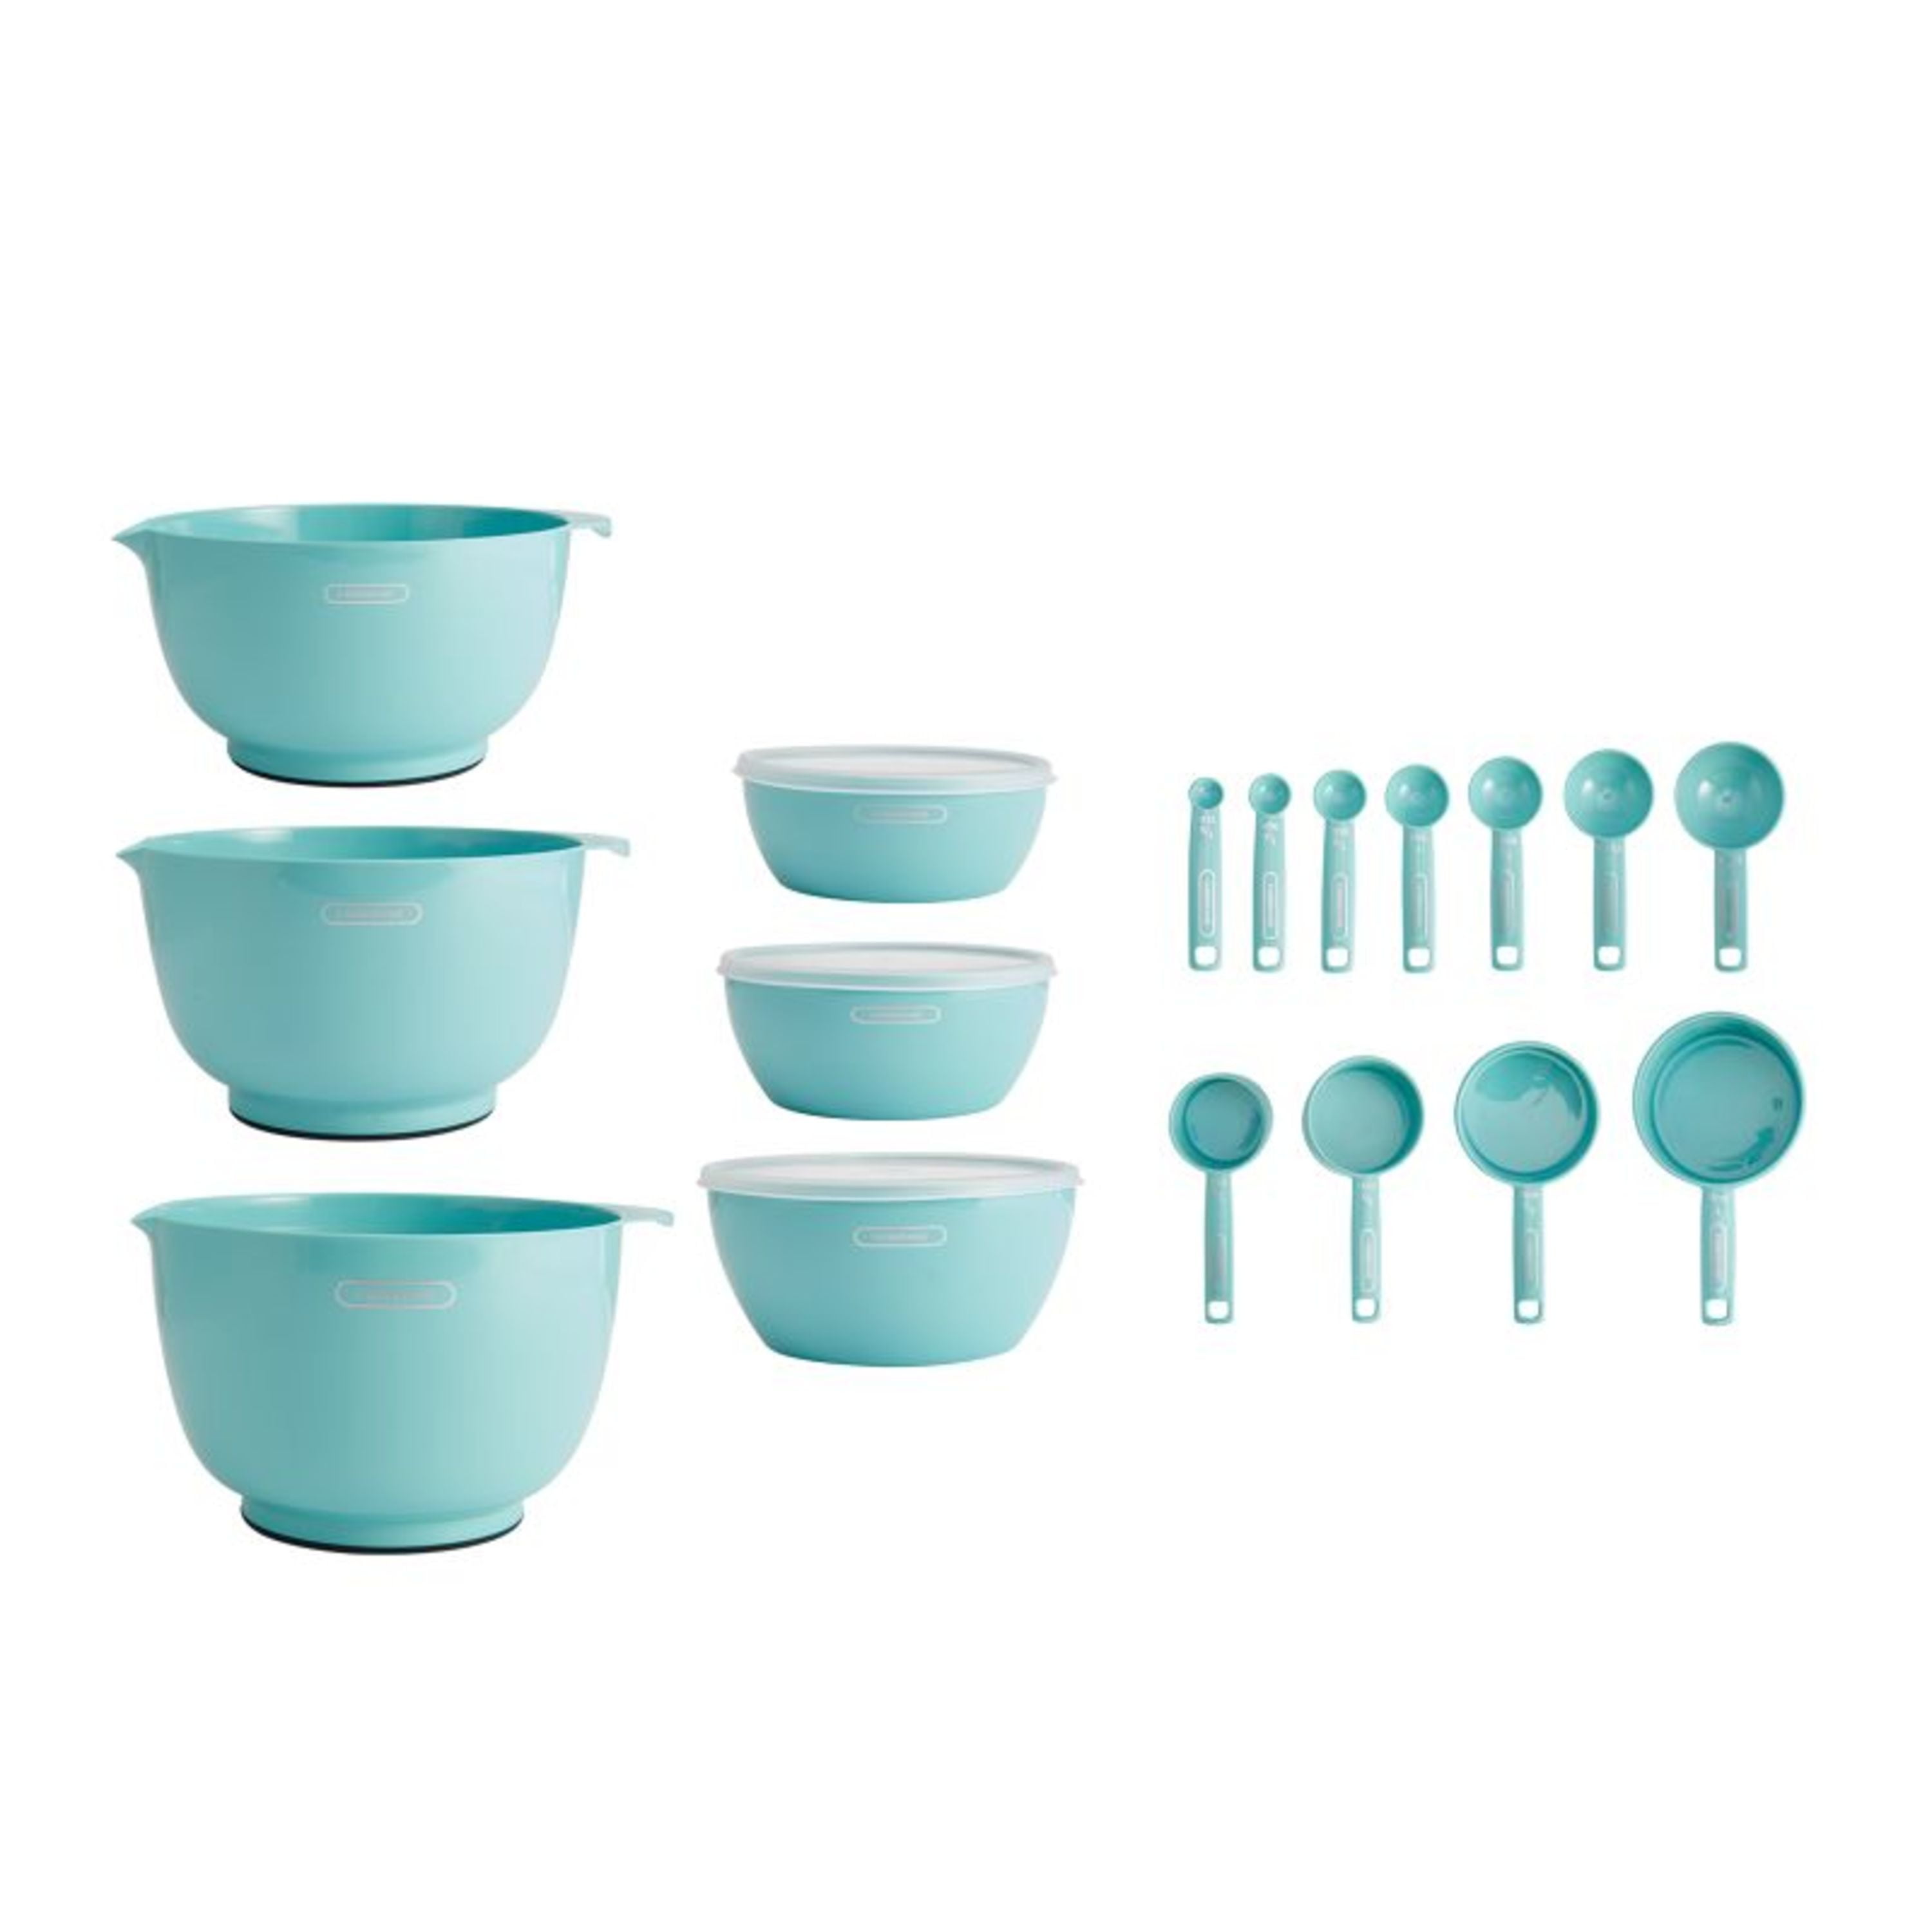 Kitchenaid Set of 7 Plastic Mixing and Prep Bowls in Aqua Sky